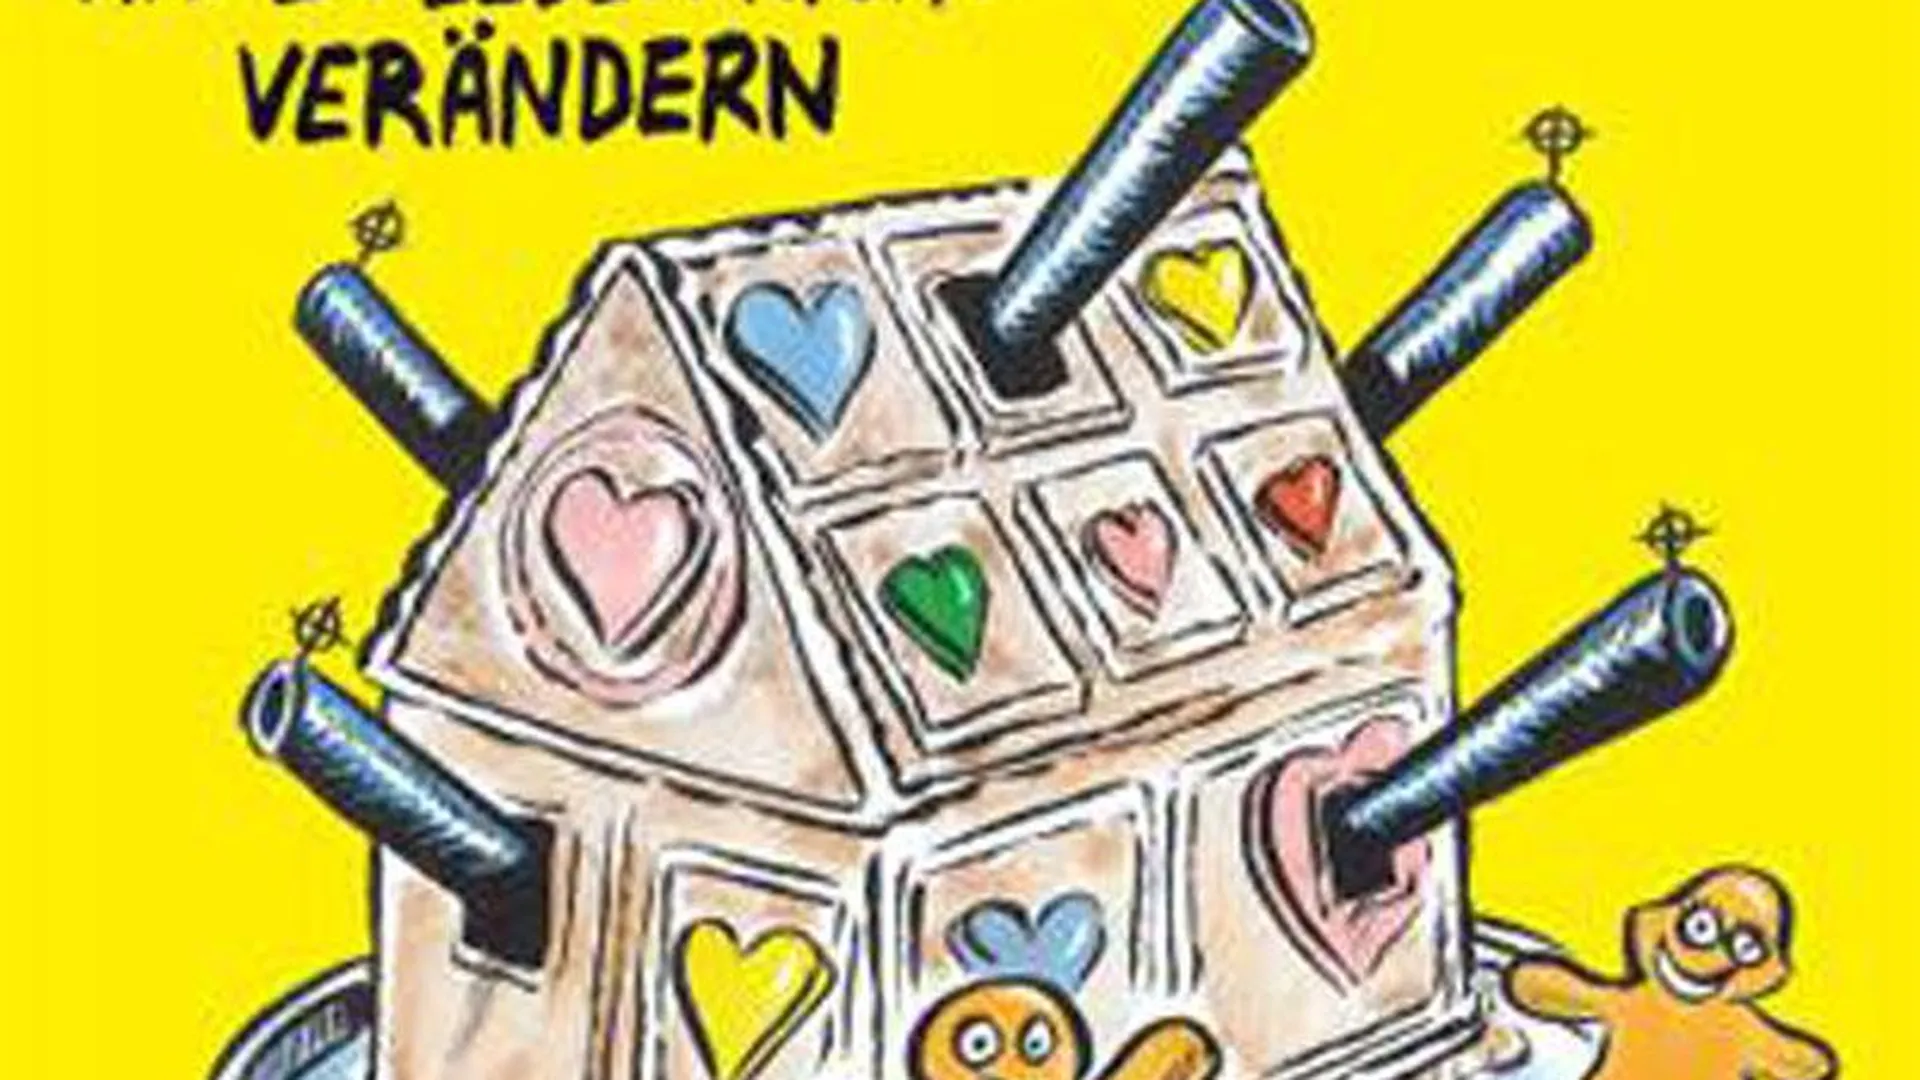 Журнал Charlie Hebdo высмеял трагедию в Берлине